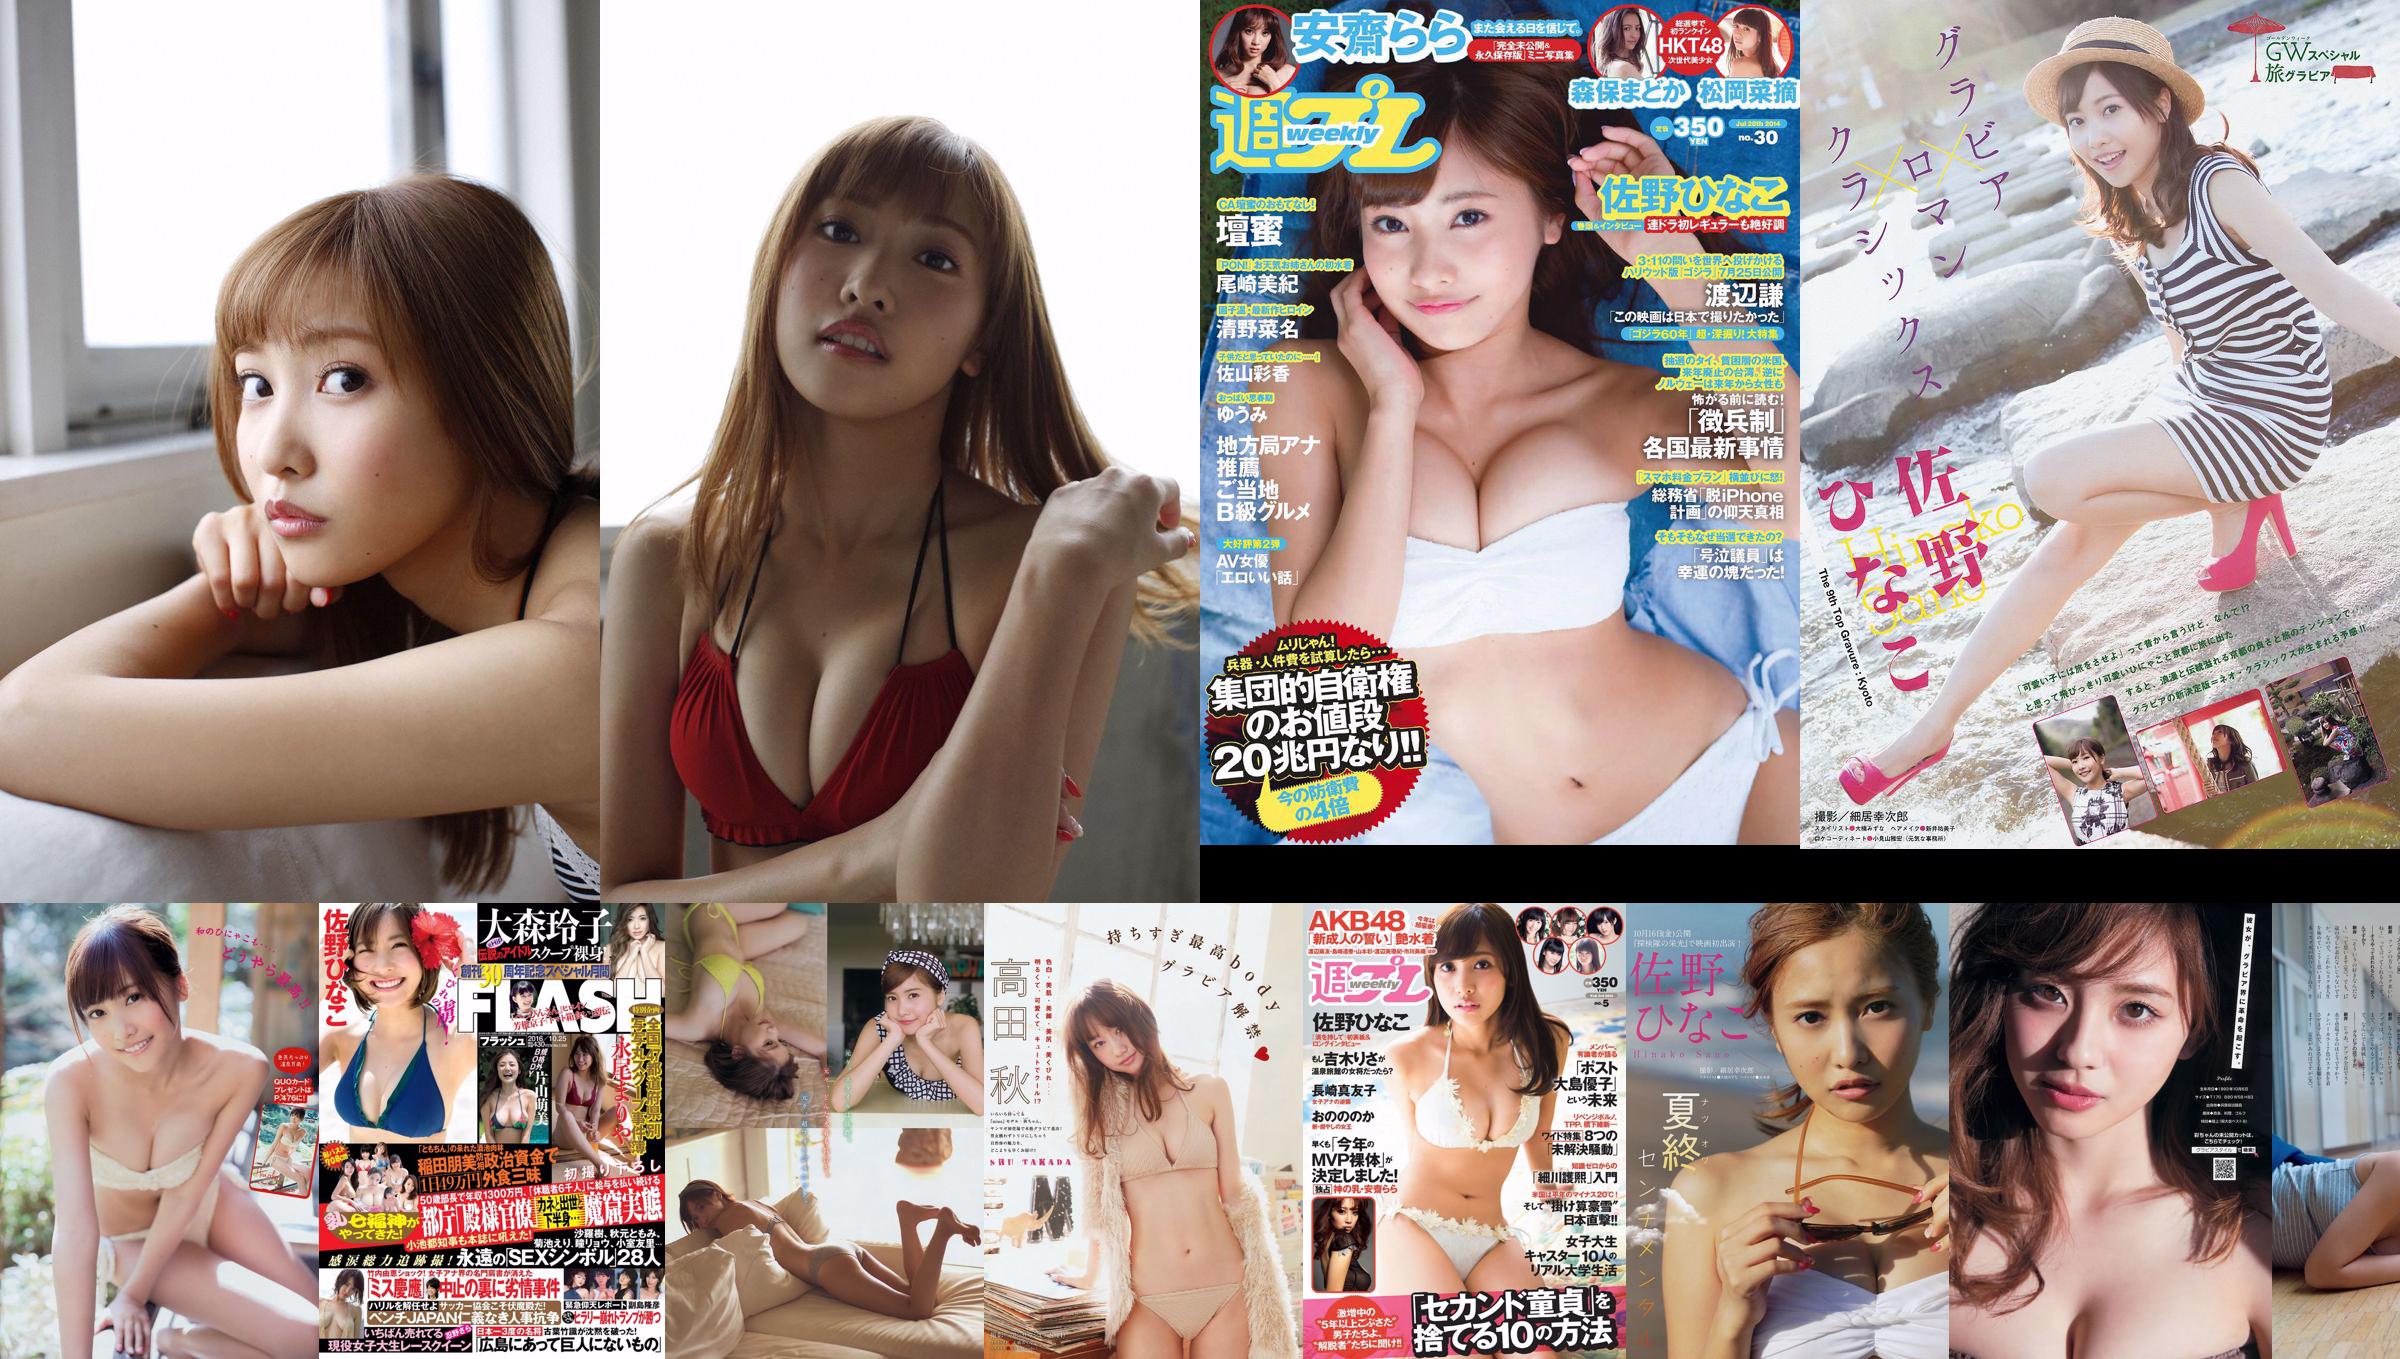 [Young Magazine] Hinako Sano 2014 No.31 Fotografia No.418c2a Pagina 1